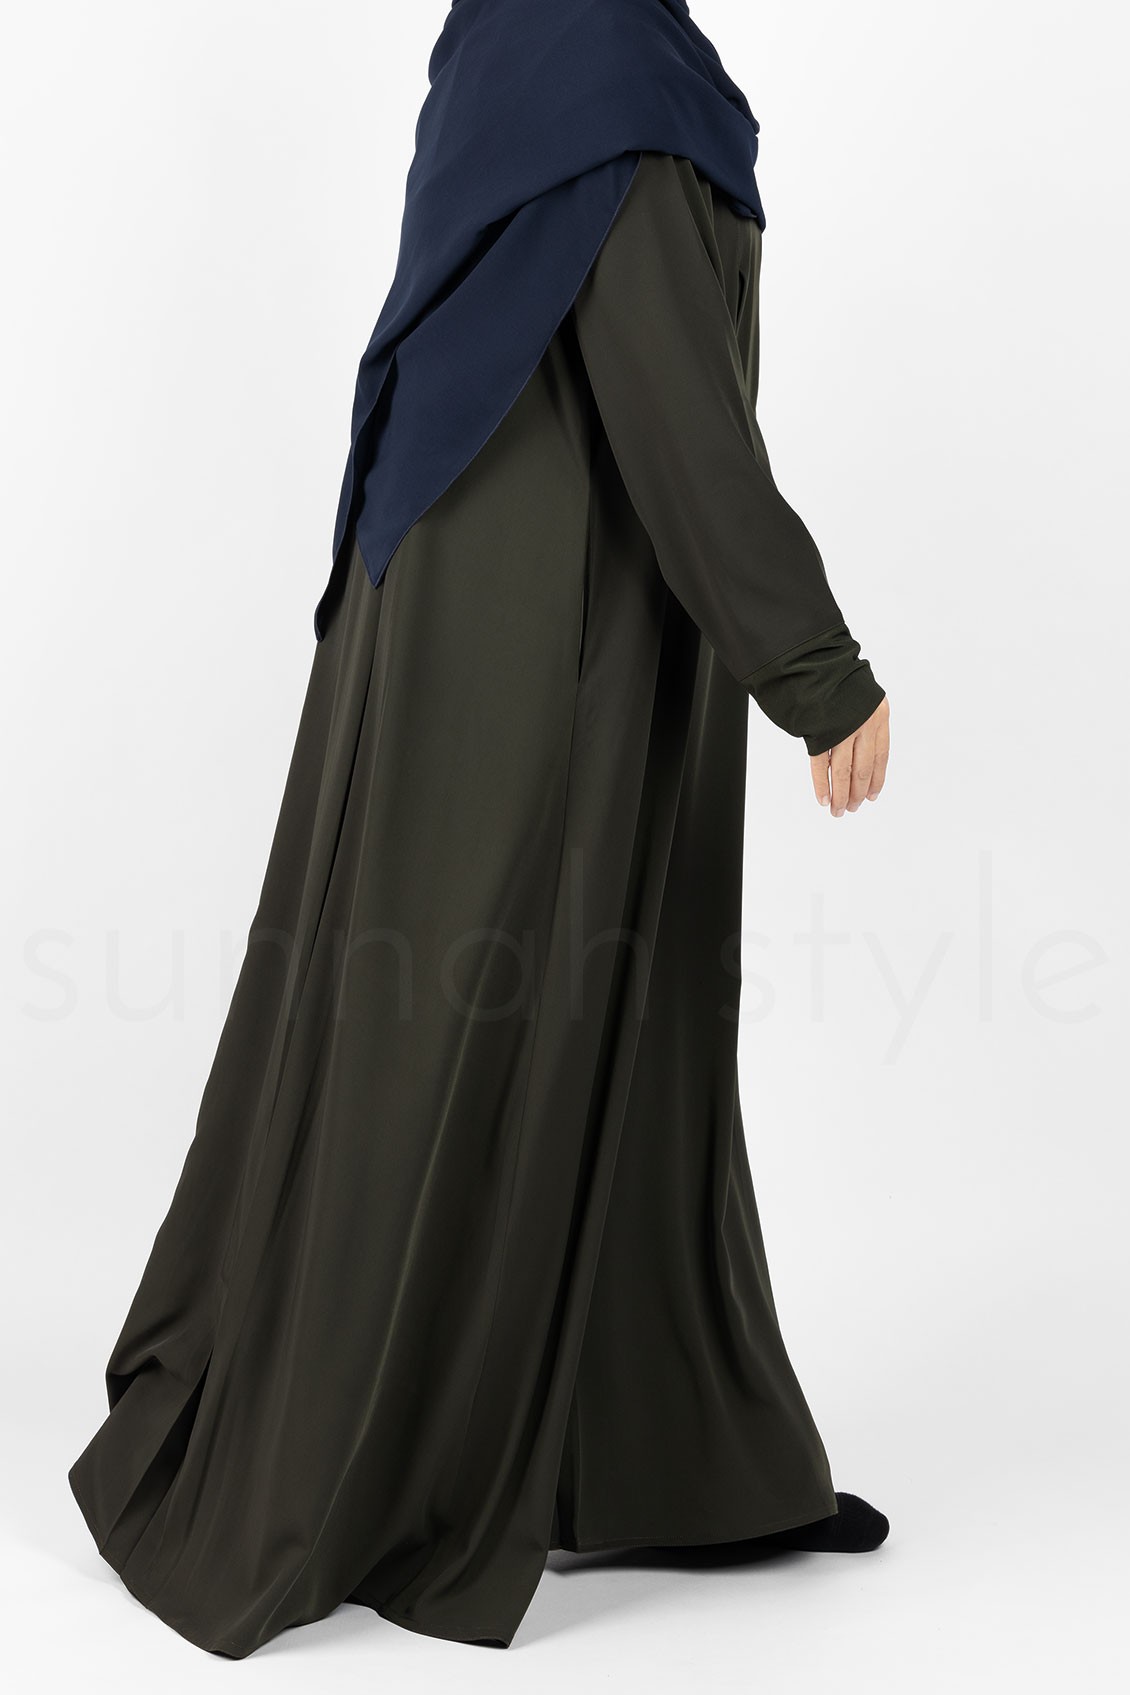 Sunnah Style Belle Umbrella Abaya Midnight Green